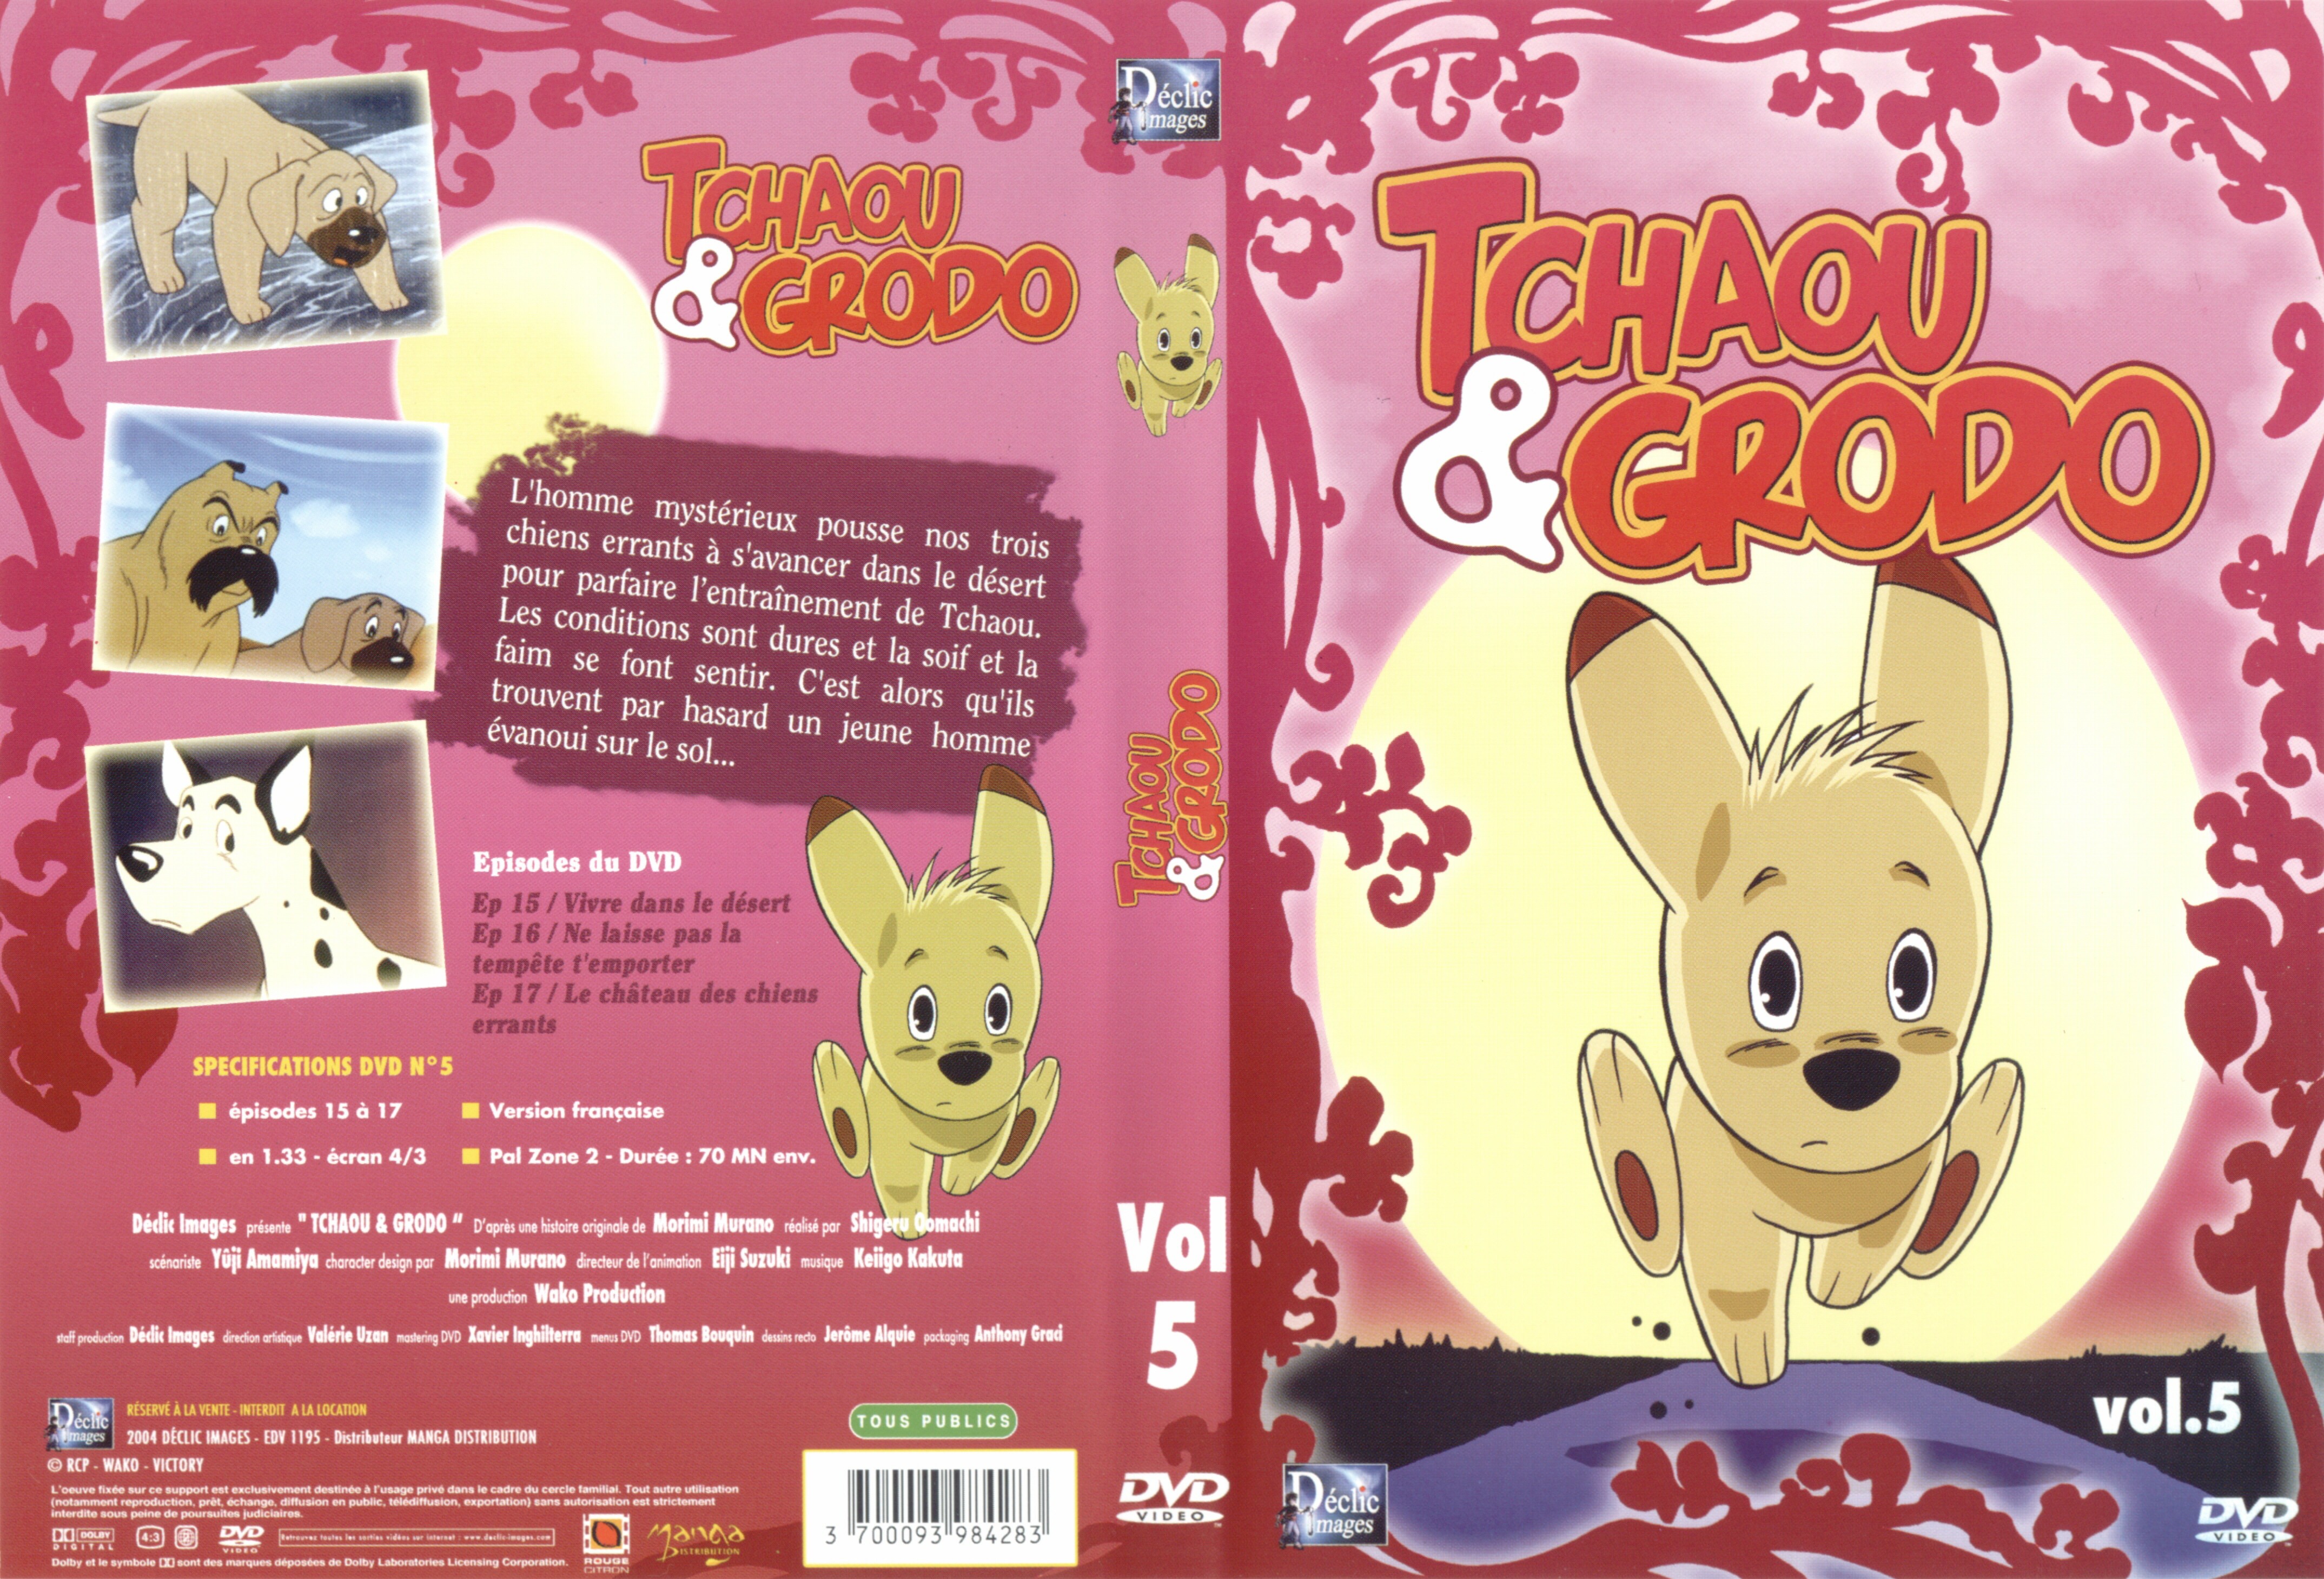 Jaquette DVD Tchaou et Grodo vol 05